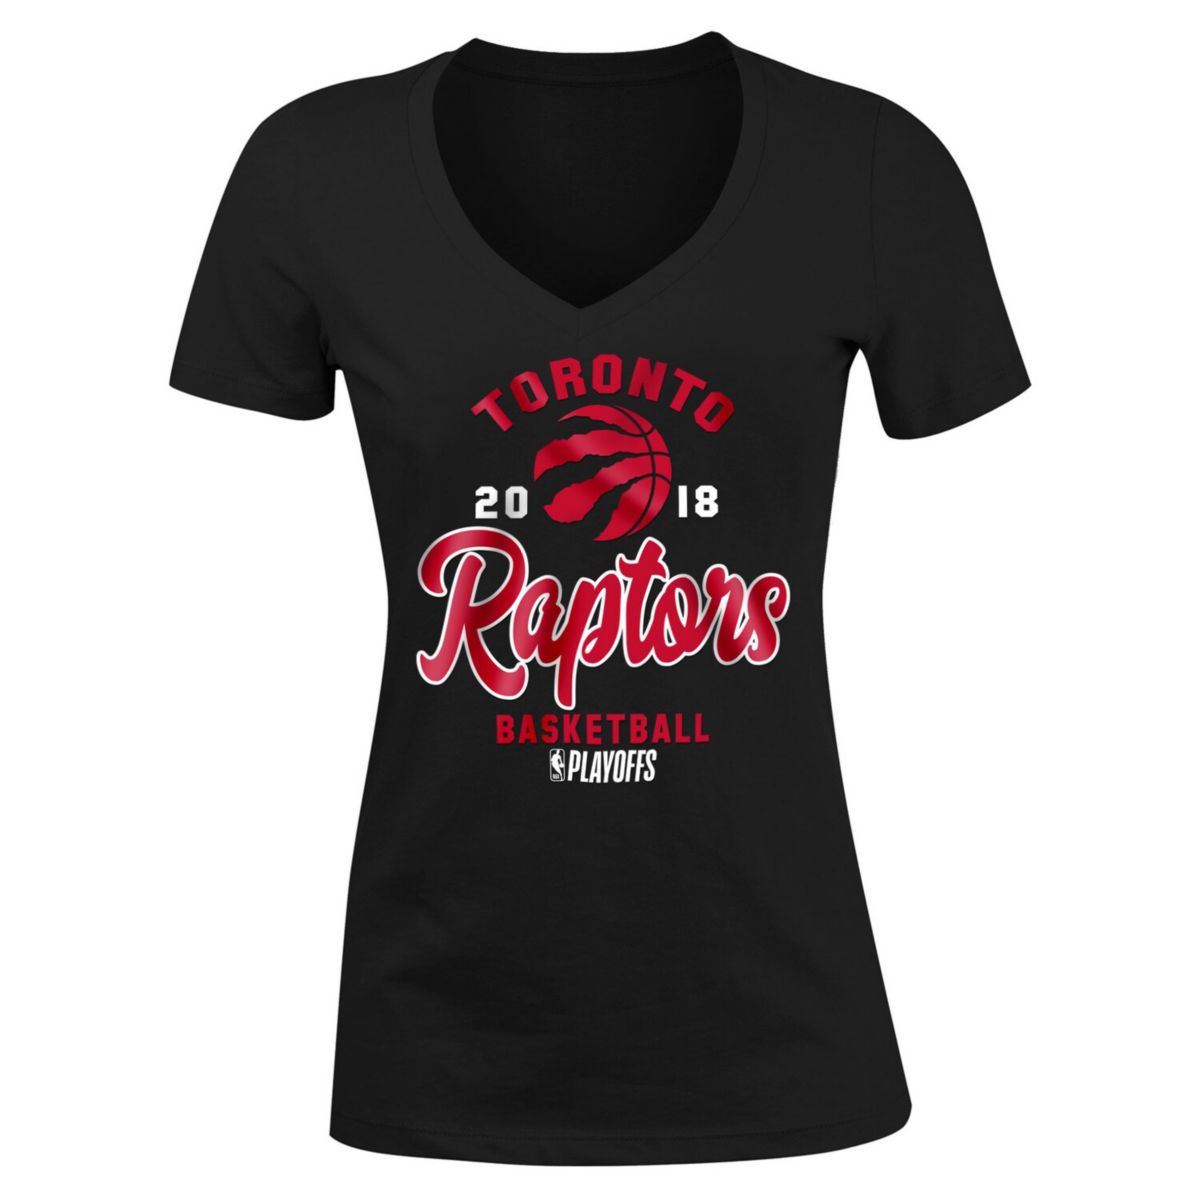 Женская футболка New Era Black Toronto Raptors 2018 из джерси для новорожденных плей-офф НБА с v-образным вырезом New Era